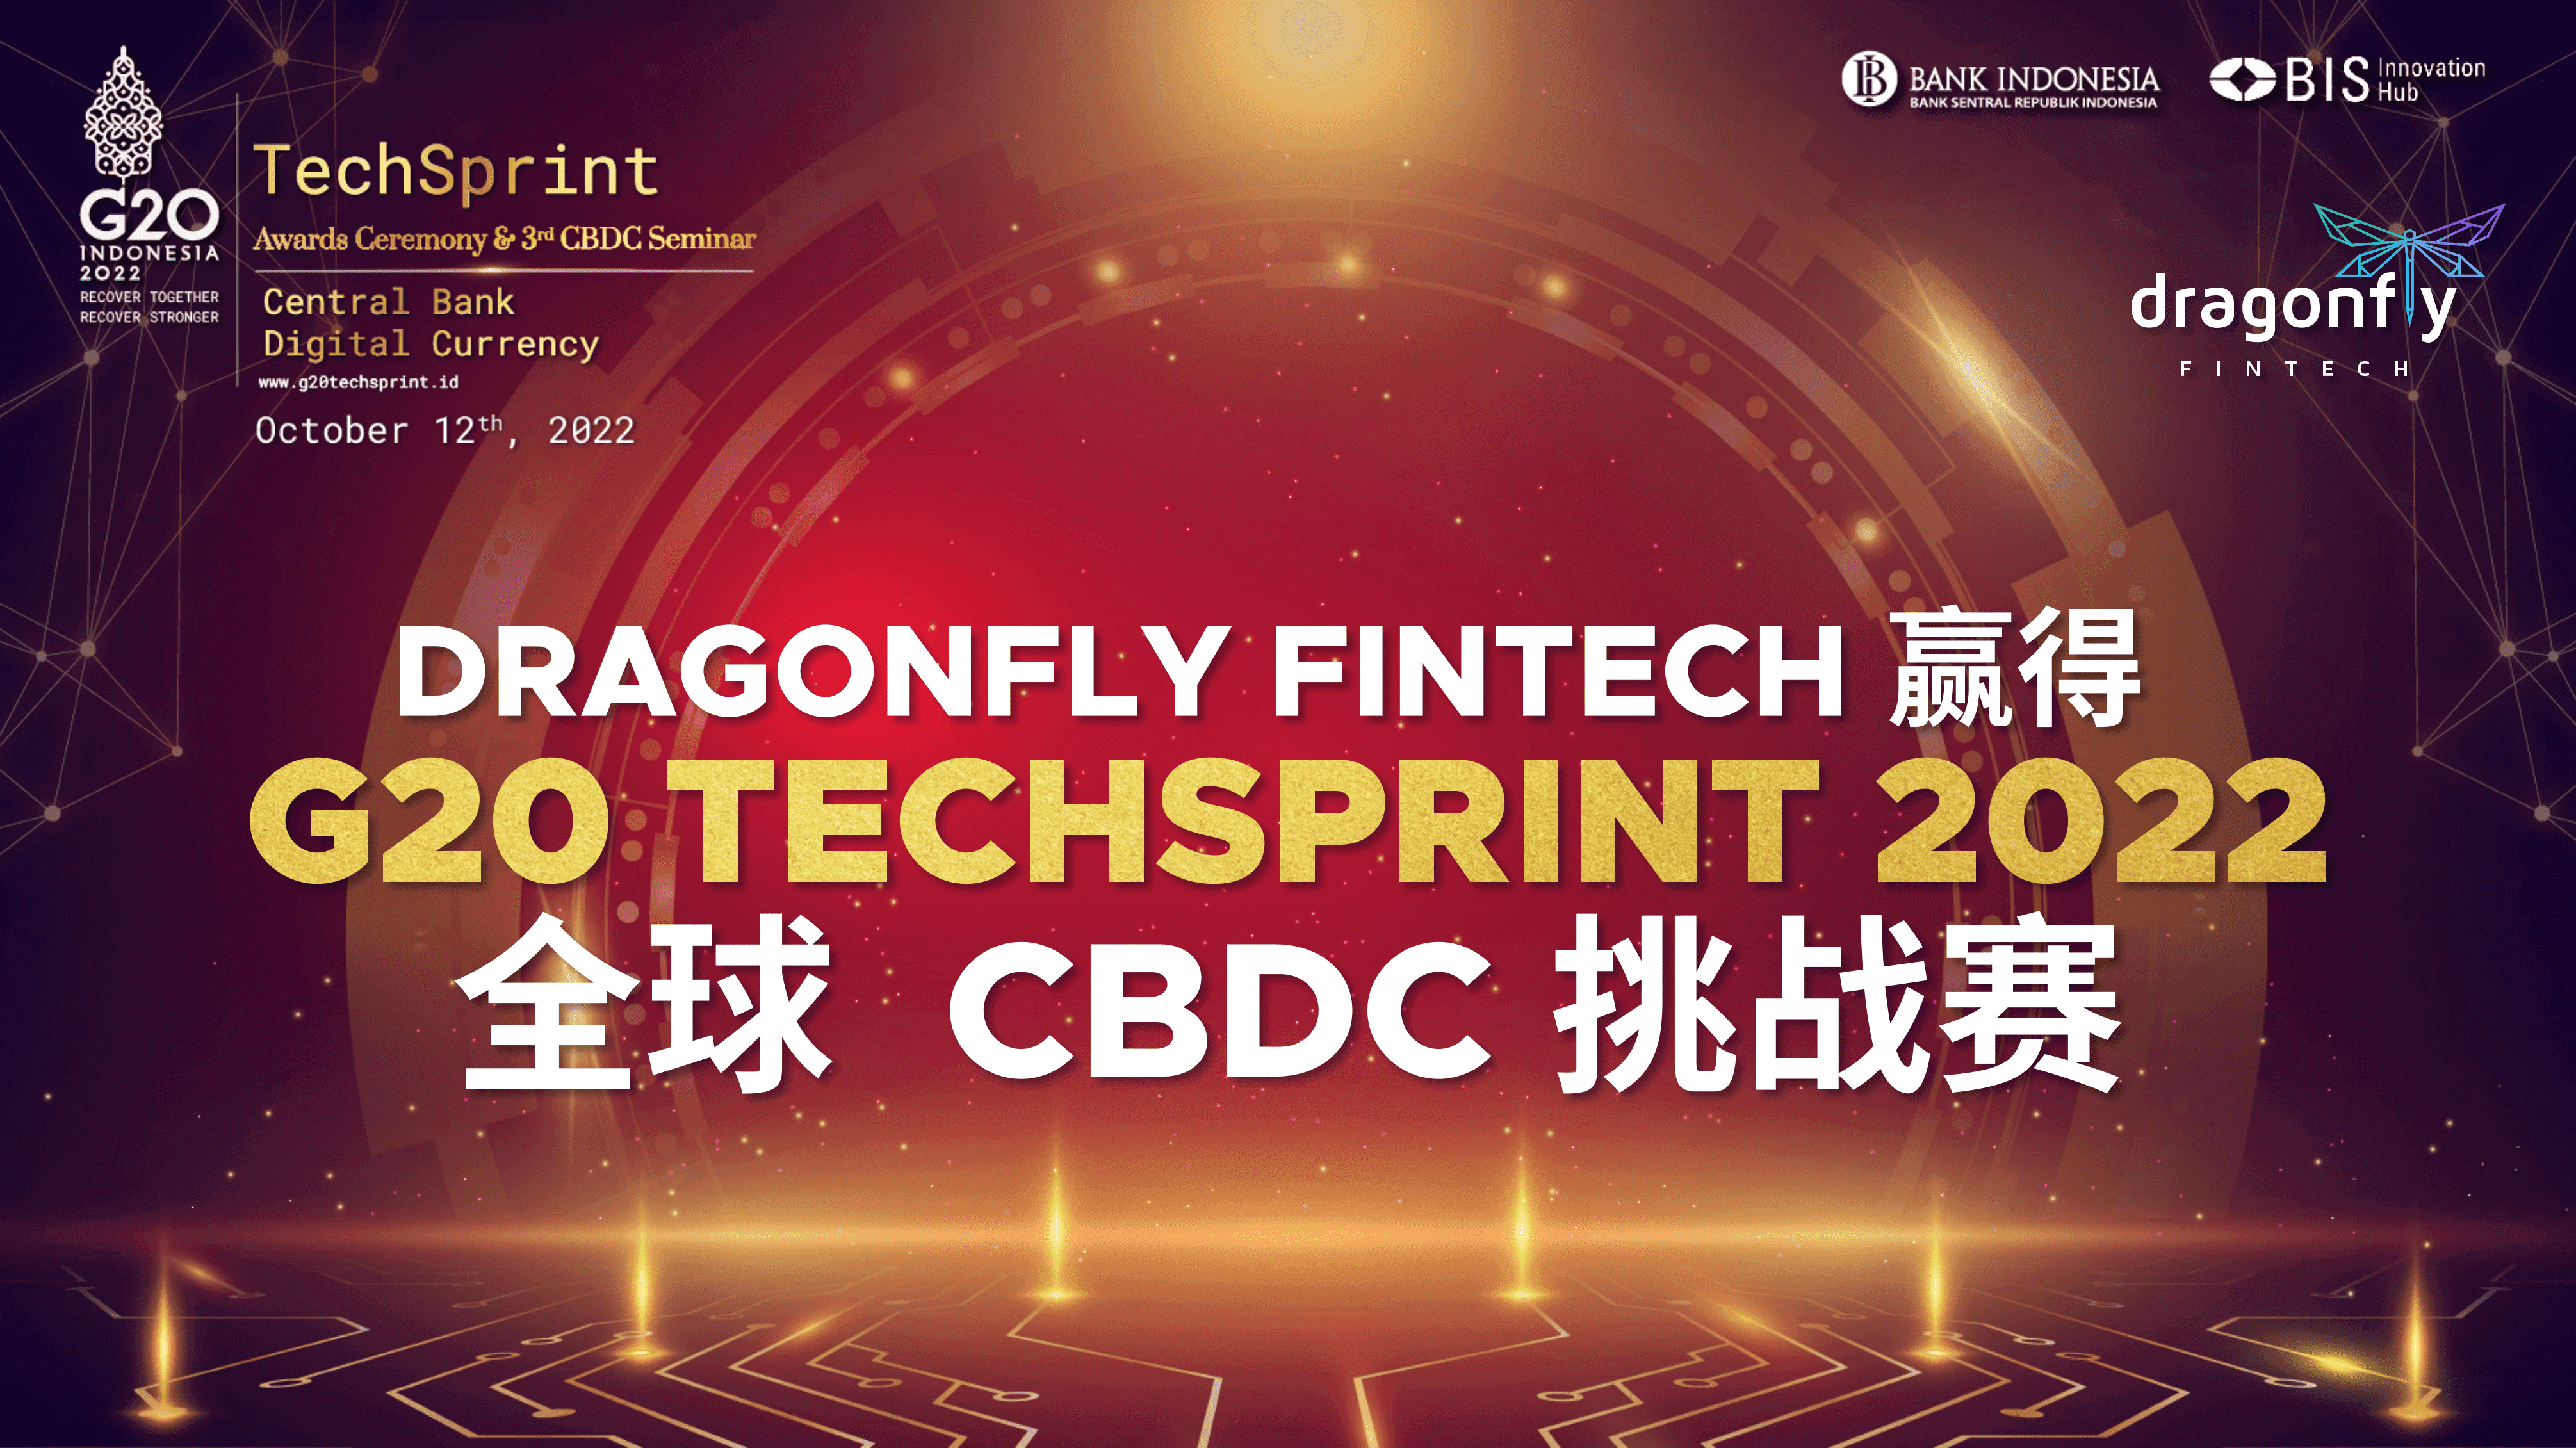 Dragonfly Fintech 赢得 G20 TECHSPRINT 2022 全球 CBDC 挑战赛